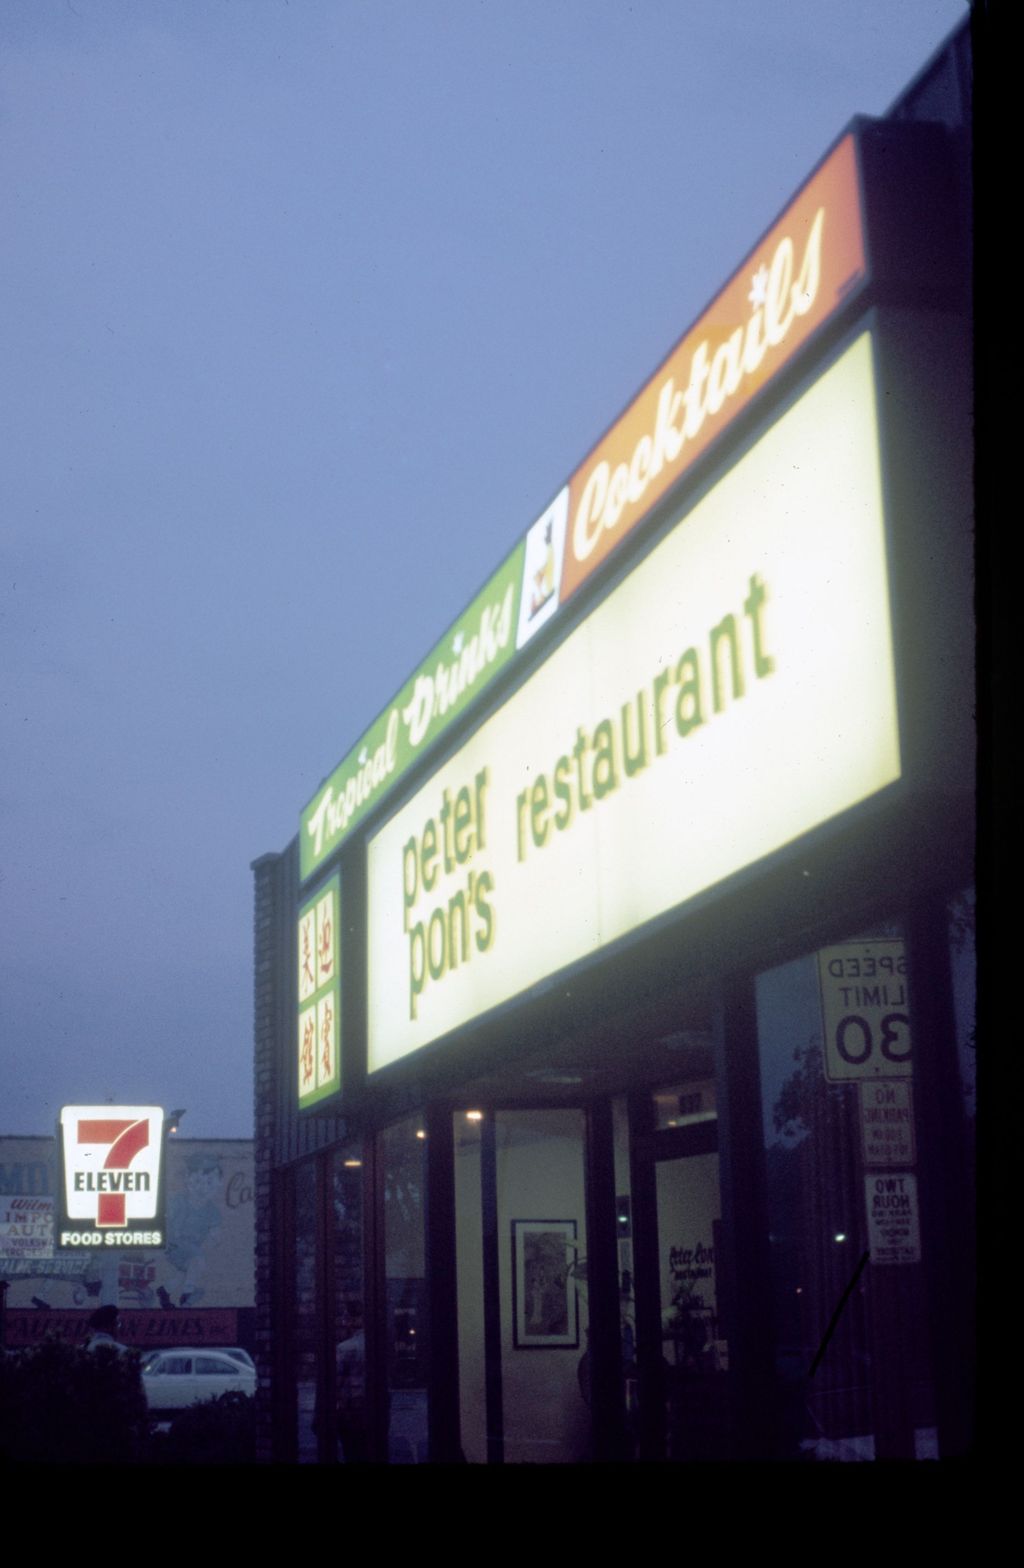 Peter Pon's Restaurant sign, Wilmette